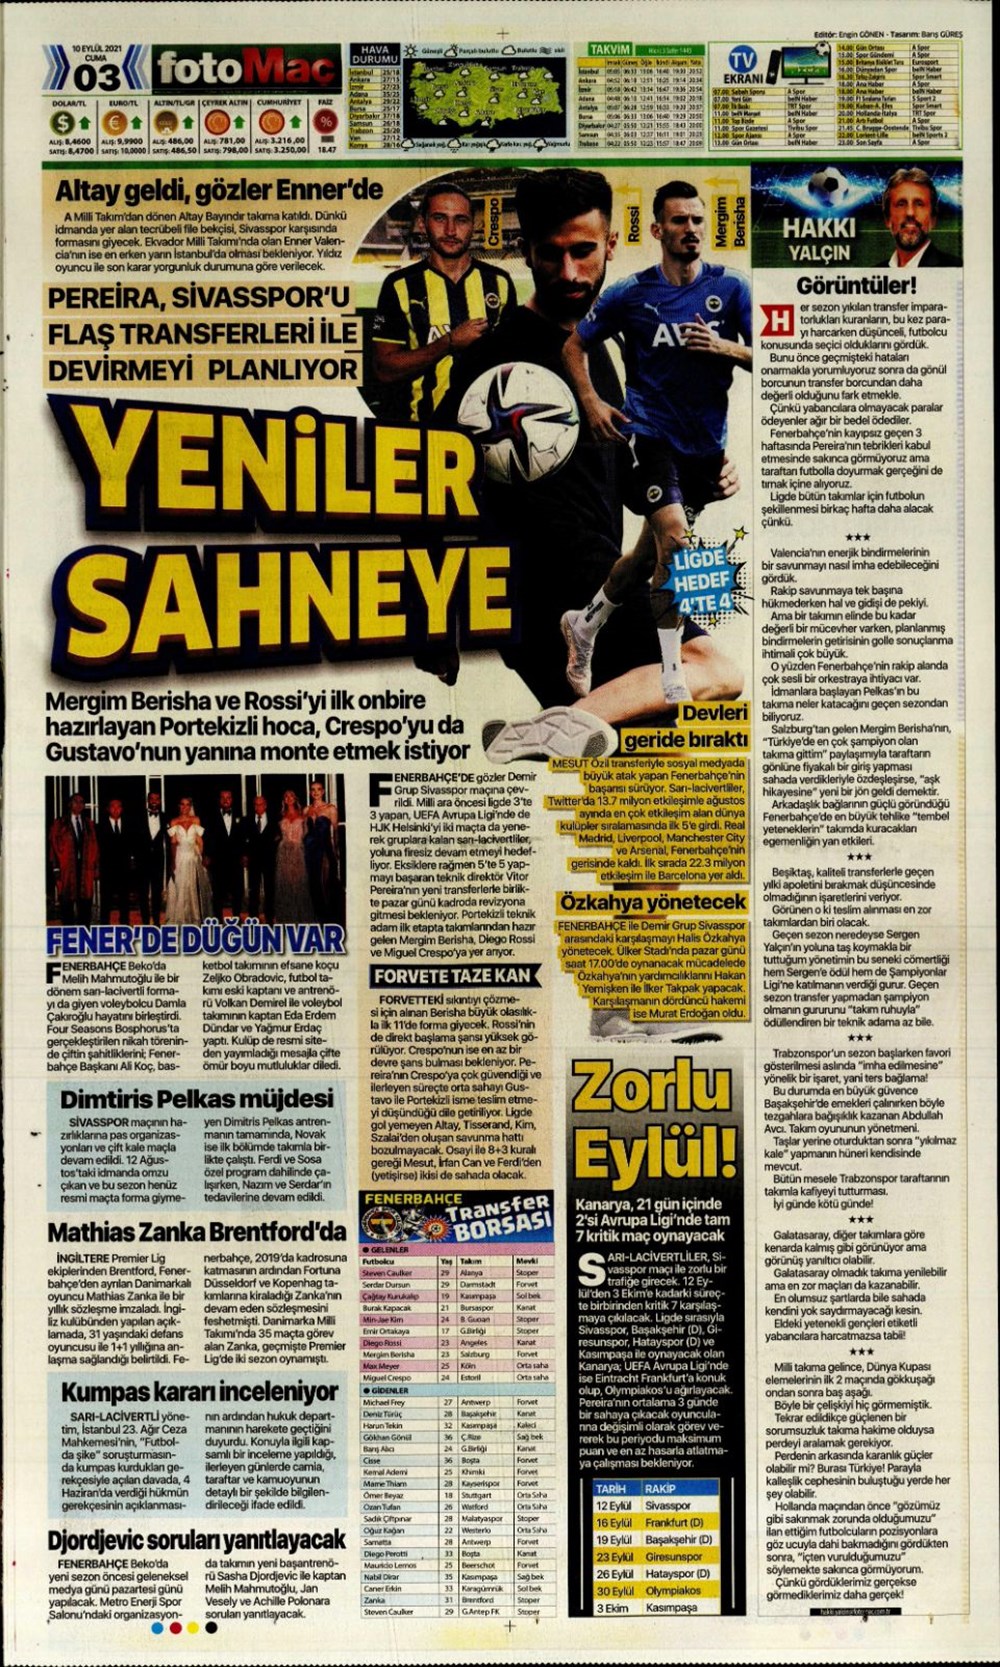 Beşiktaş - Galatasaray  CANLI - Son dakika Beşiktaş haberleri - Fotomaç